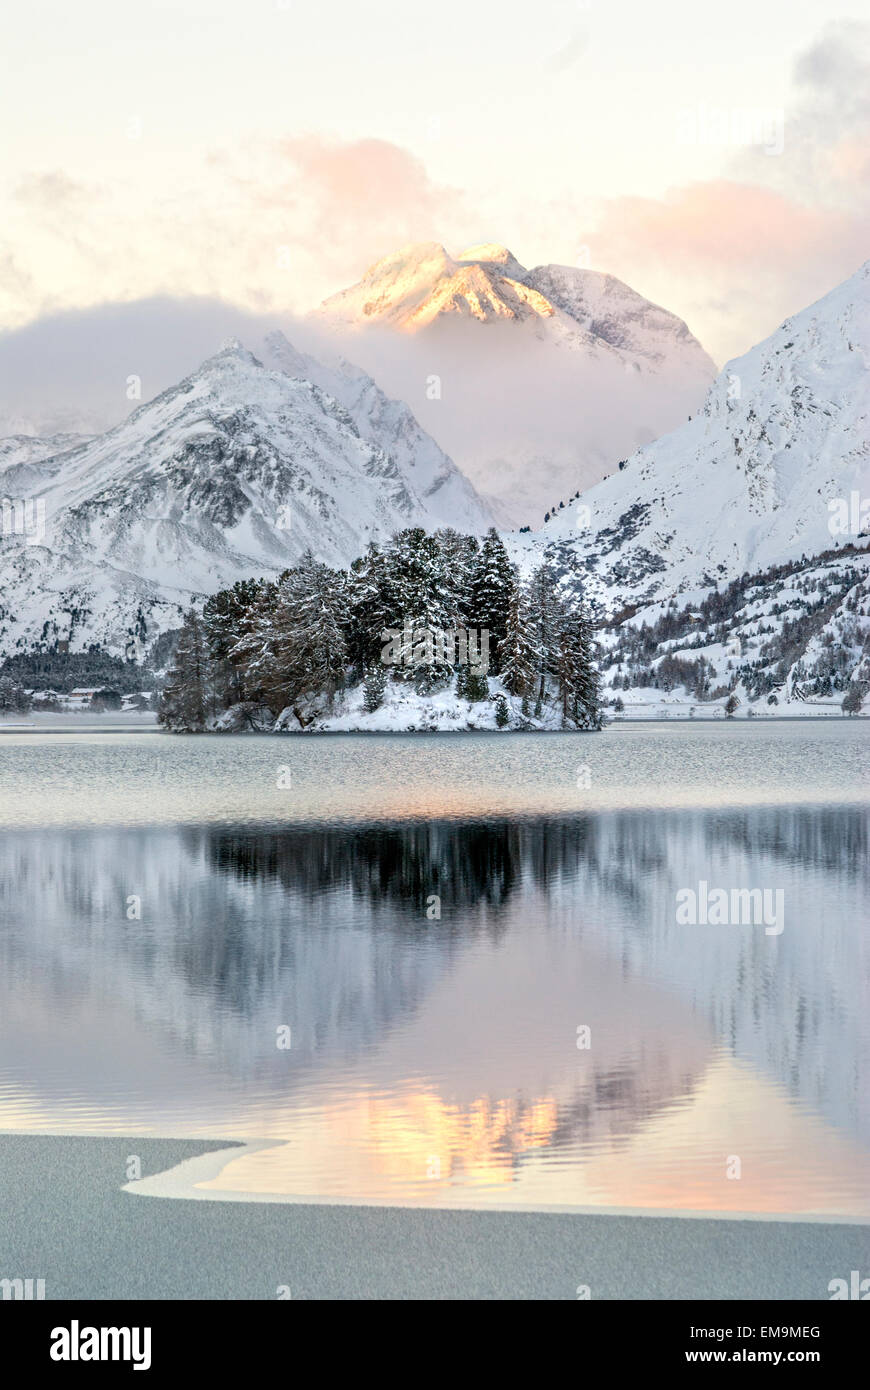 Winter landscape, Lake Sils, Sils Maria, Engadine, Switzerland Stock Photo